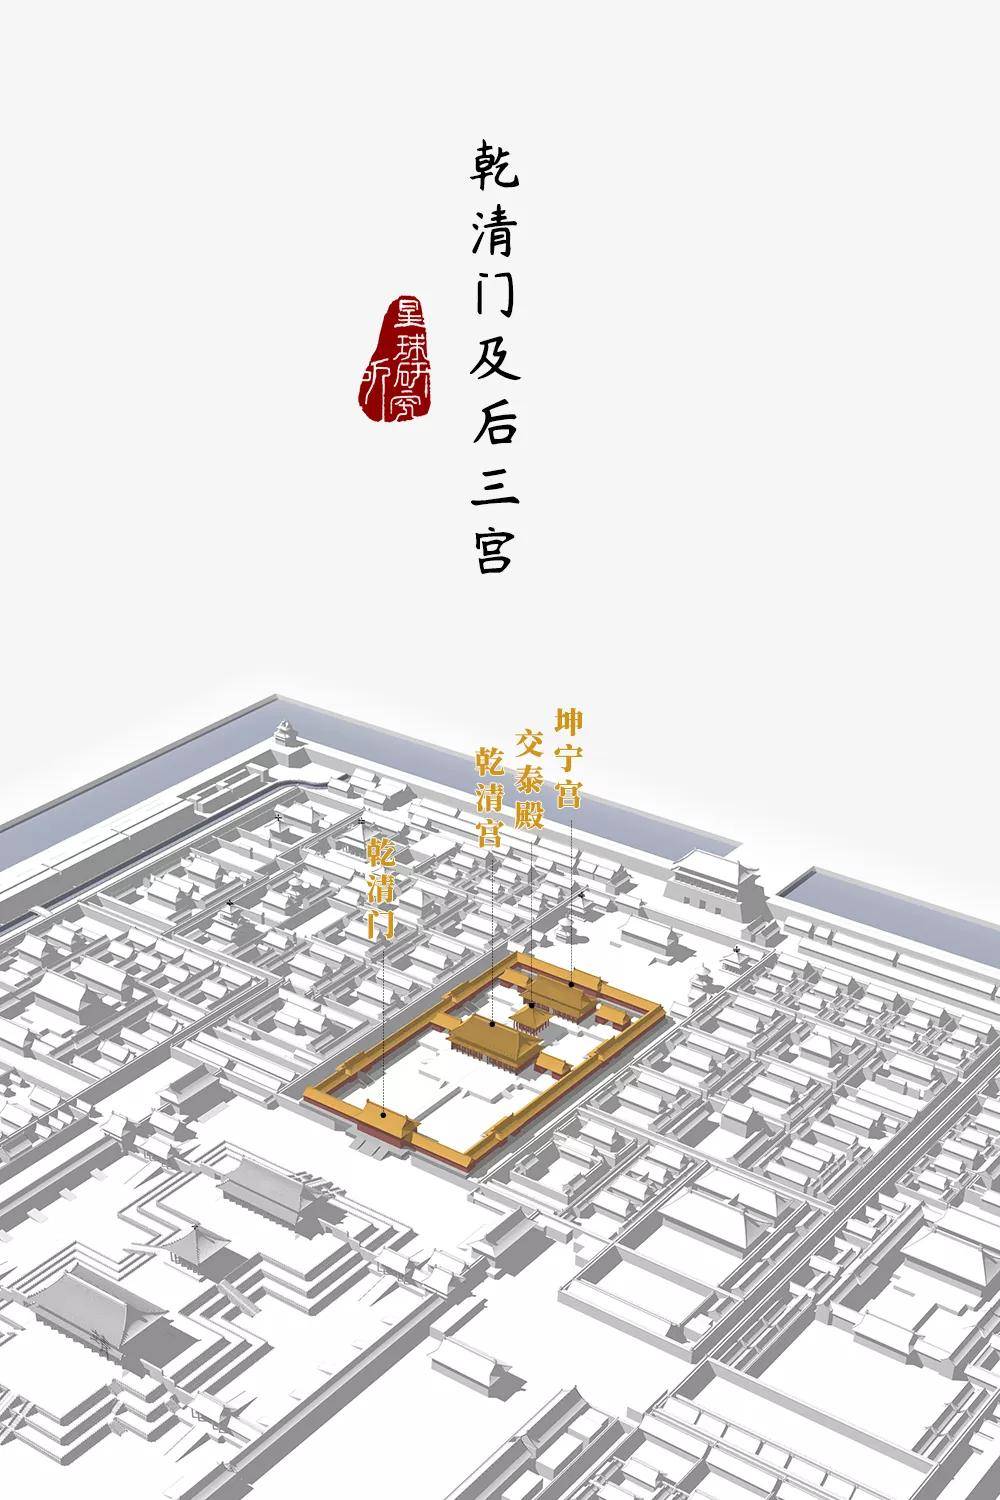 与前朝三大殿对应修建的 乾清宫,交泰殿,坤宁宫 统称为"后三宫" (乾清